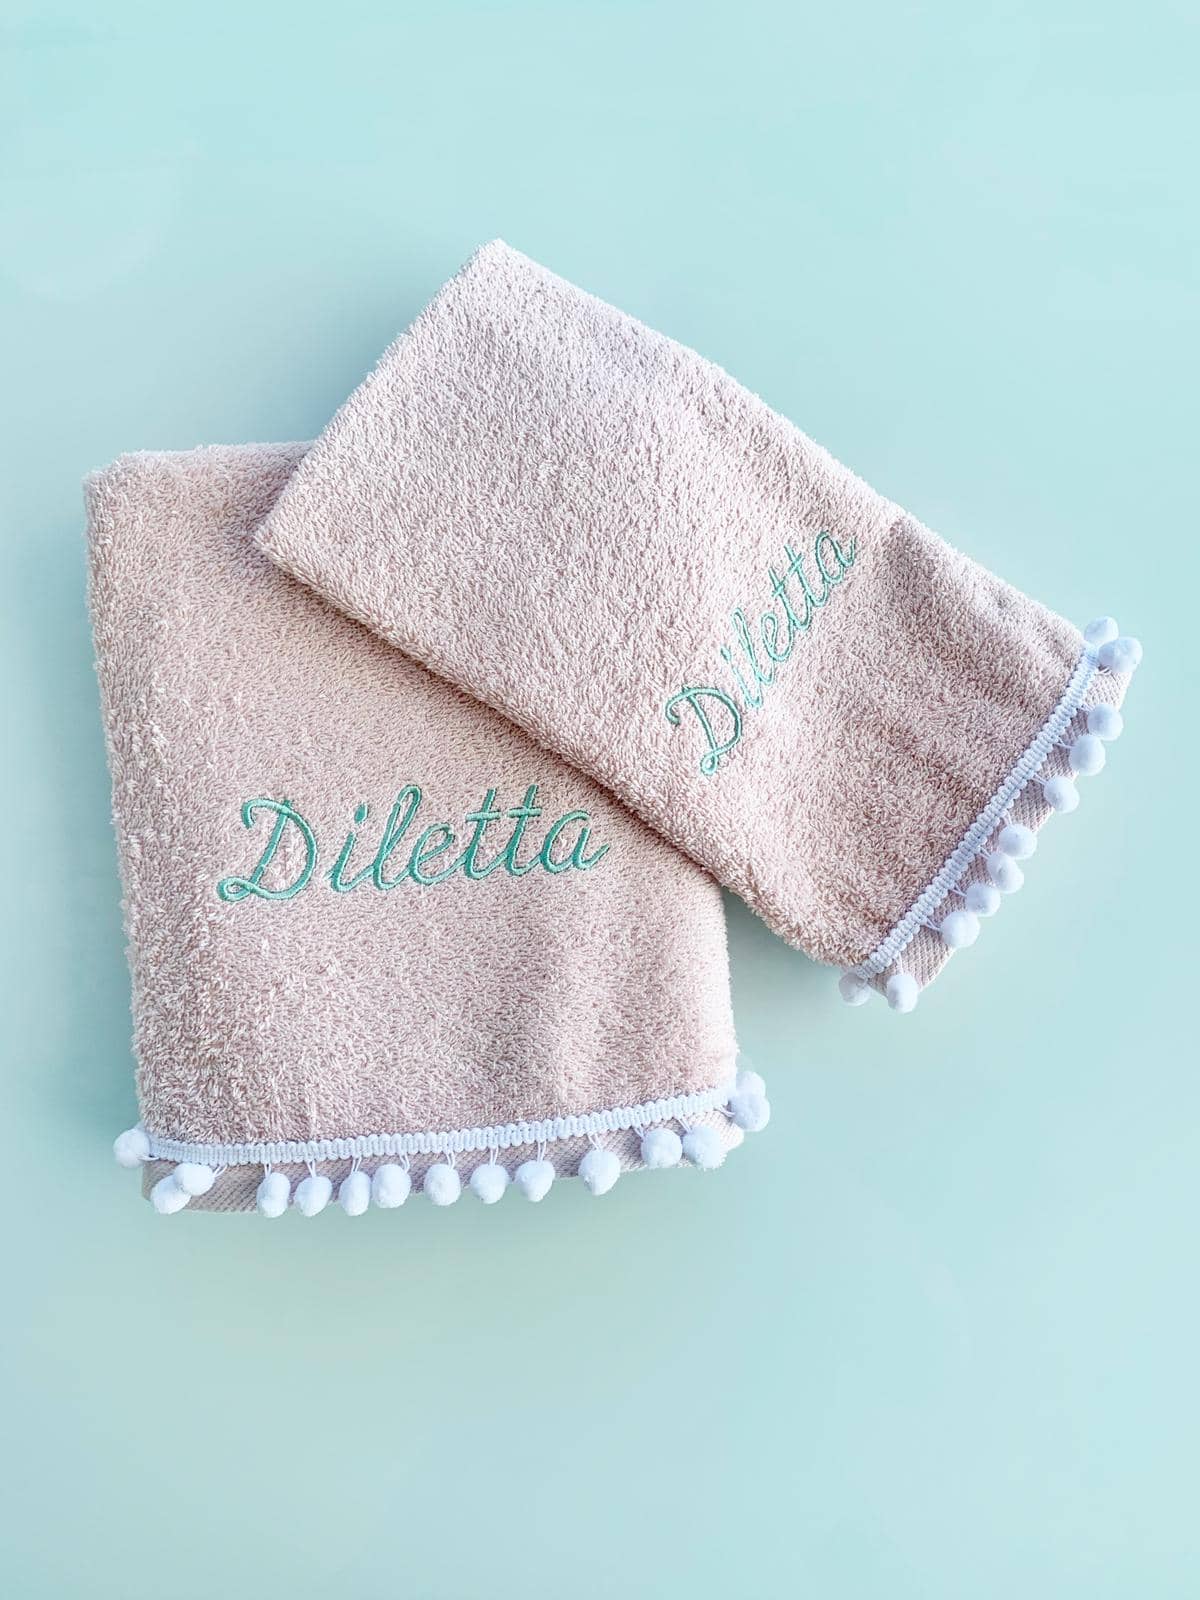 Asciugamani personalizzati con nome: idee regalo per bambini all'asilo